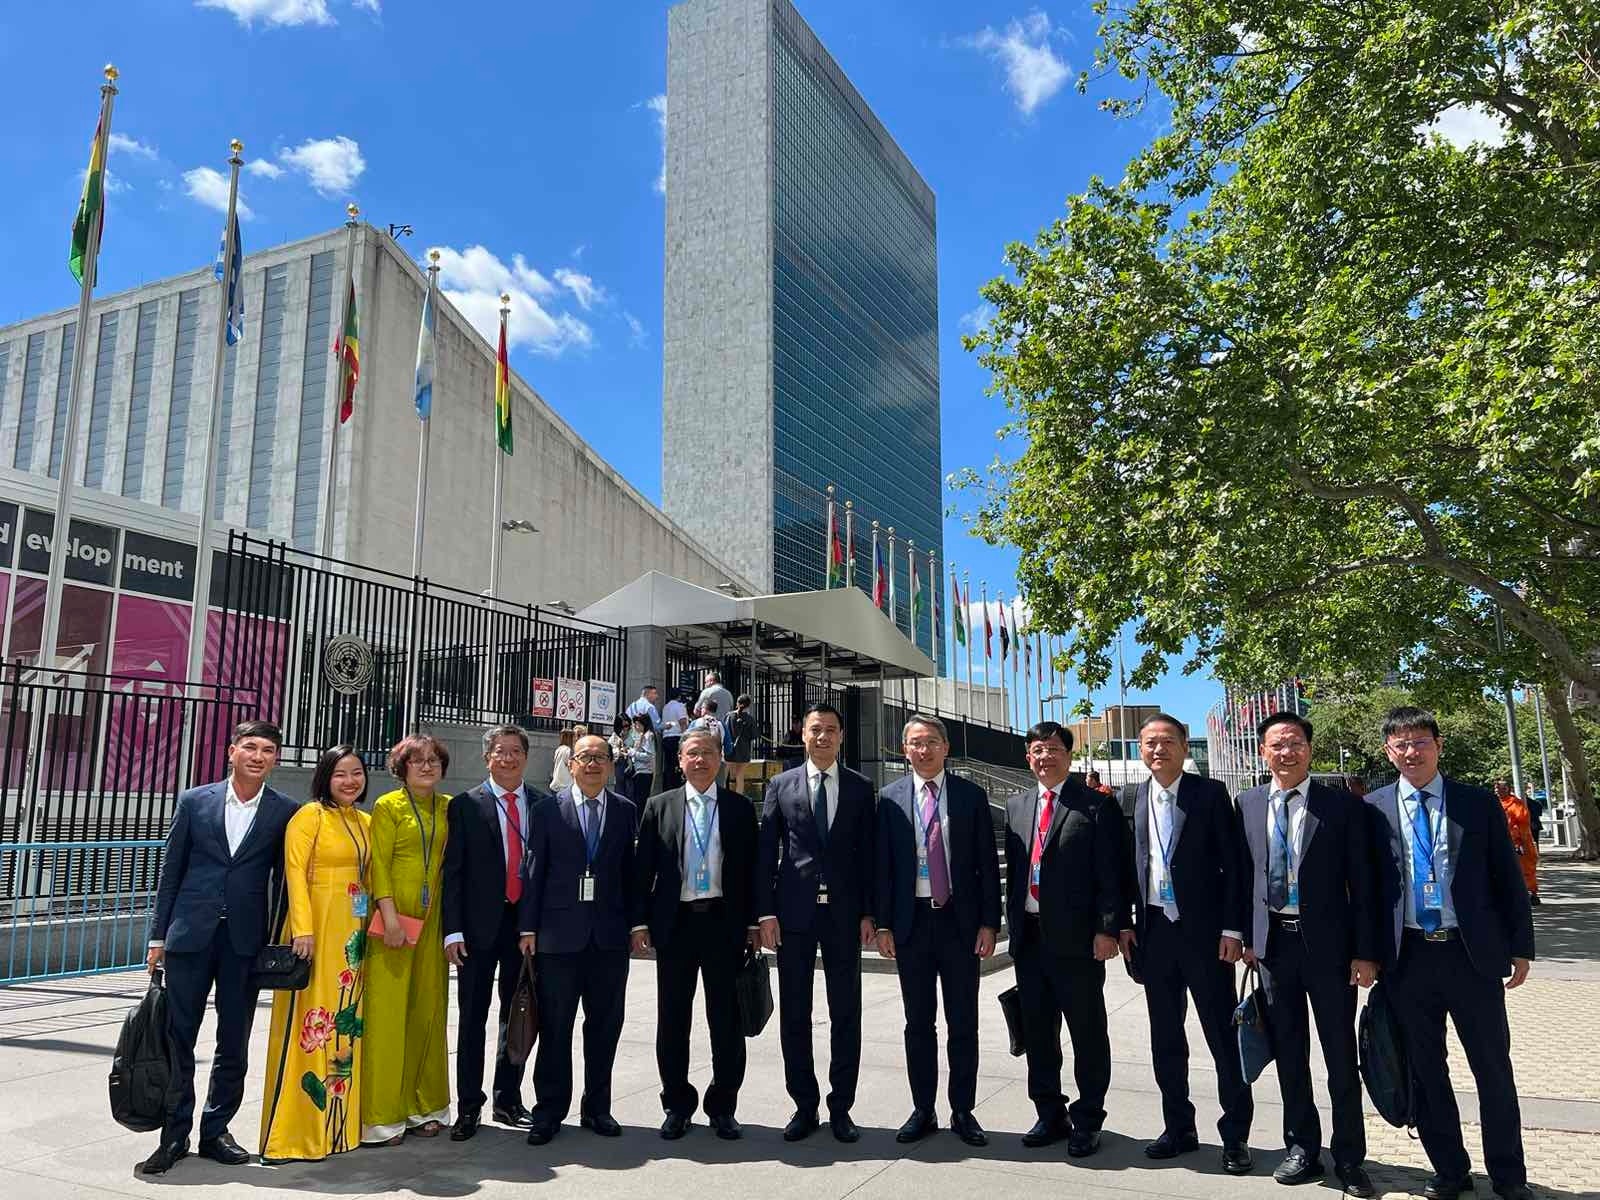 Đoàn công tác chụp ảnh lưu niệm trước Toà nhà Liên hiệp quốc.
